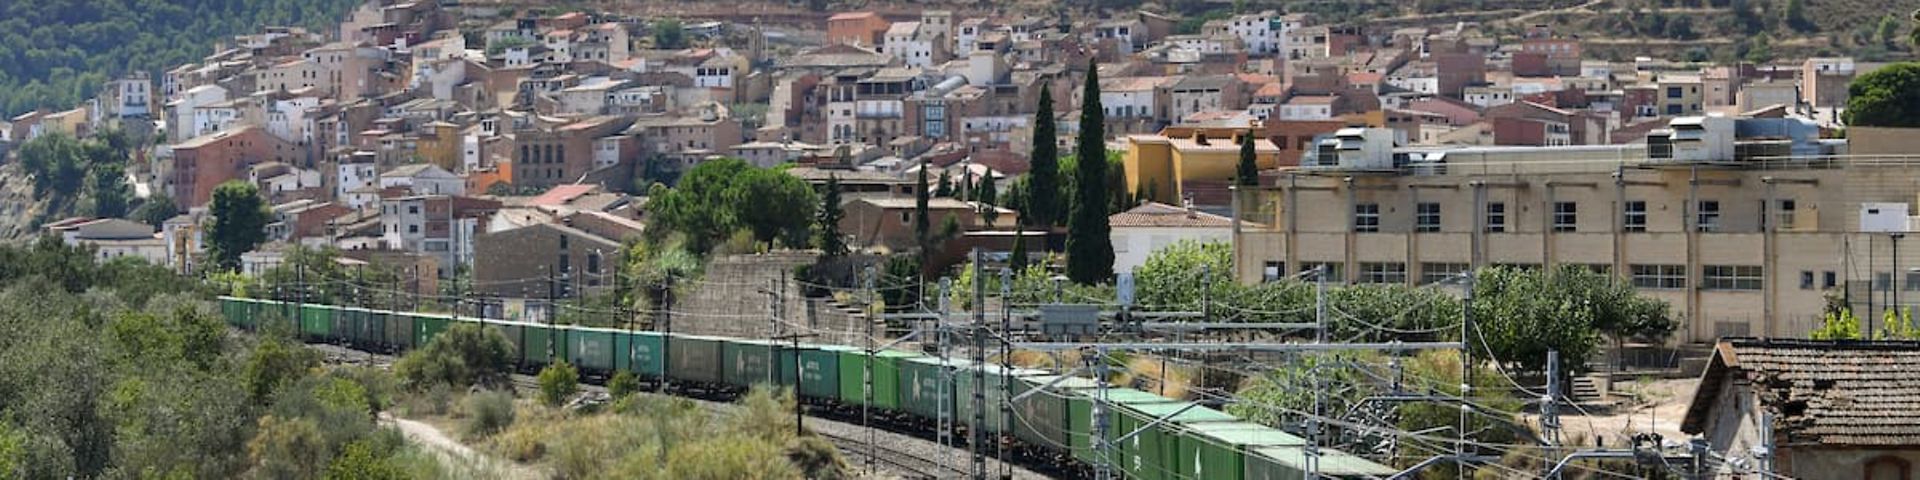 Ein Zug fährt durch eine mediterrane Landschaft.